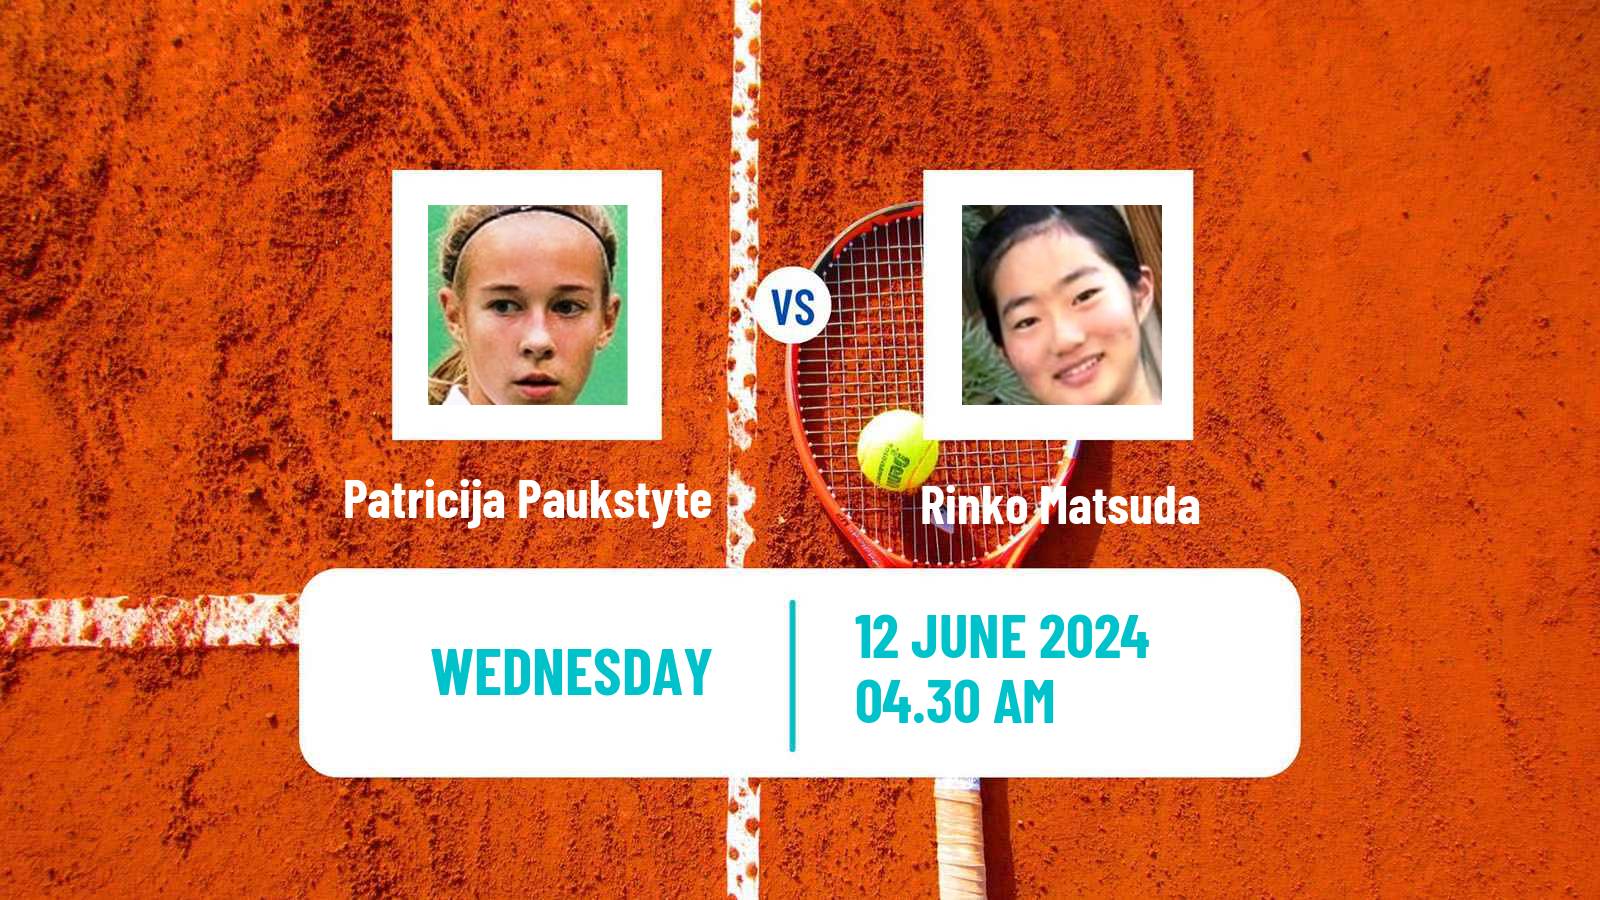 Tennis ITF W15 Monastir 22 Women Patricija Paukstyte - Rinko Matsuda